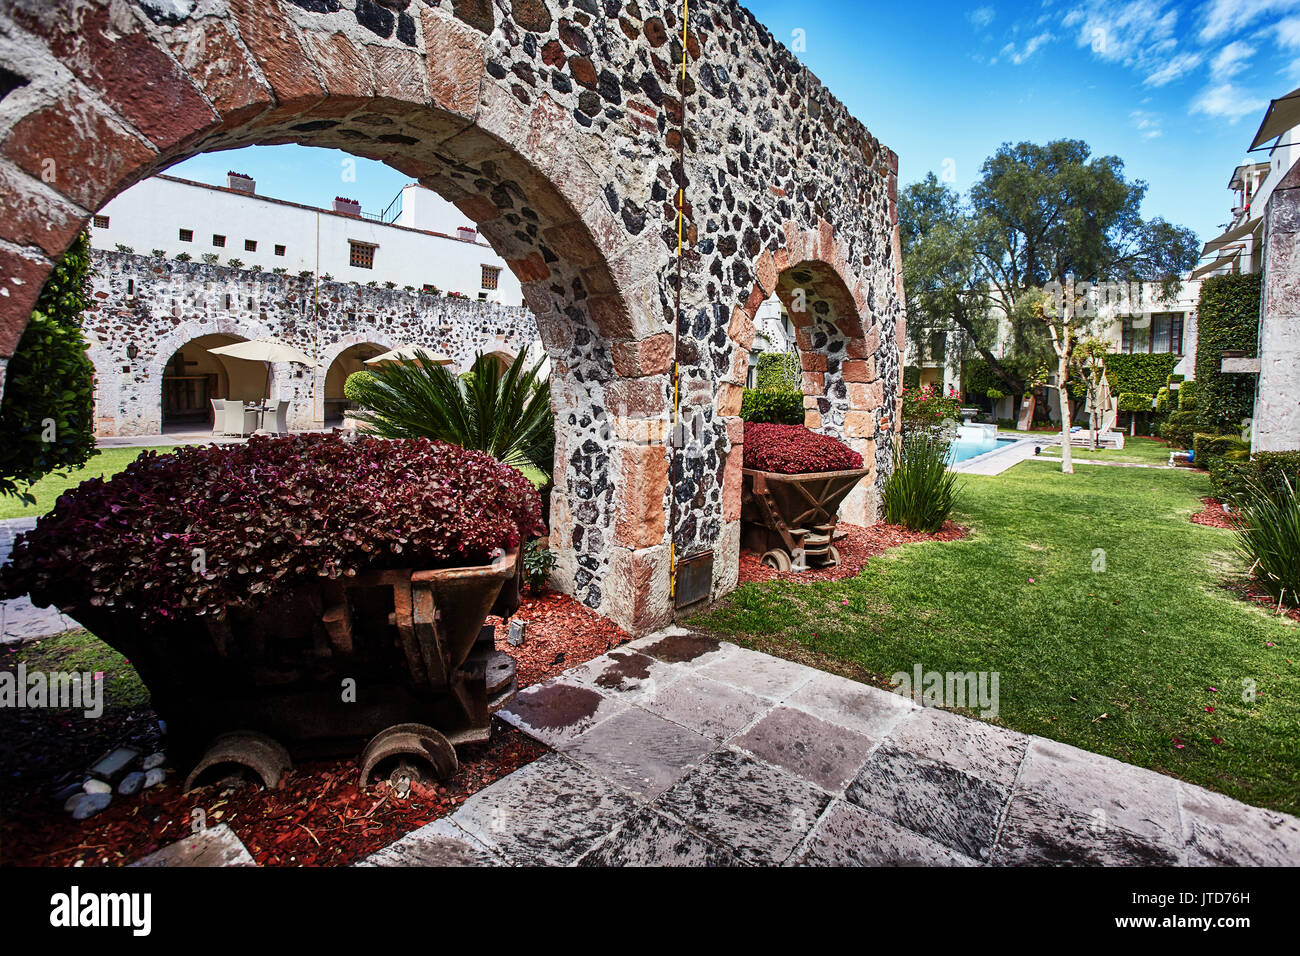 America; Mexico; Querétaro; Querétaro city; aqueduct In the garden of the hotel Doña Urraca Stock Photo